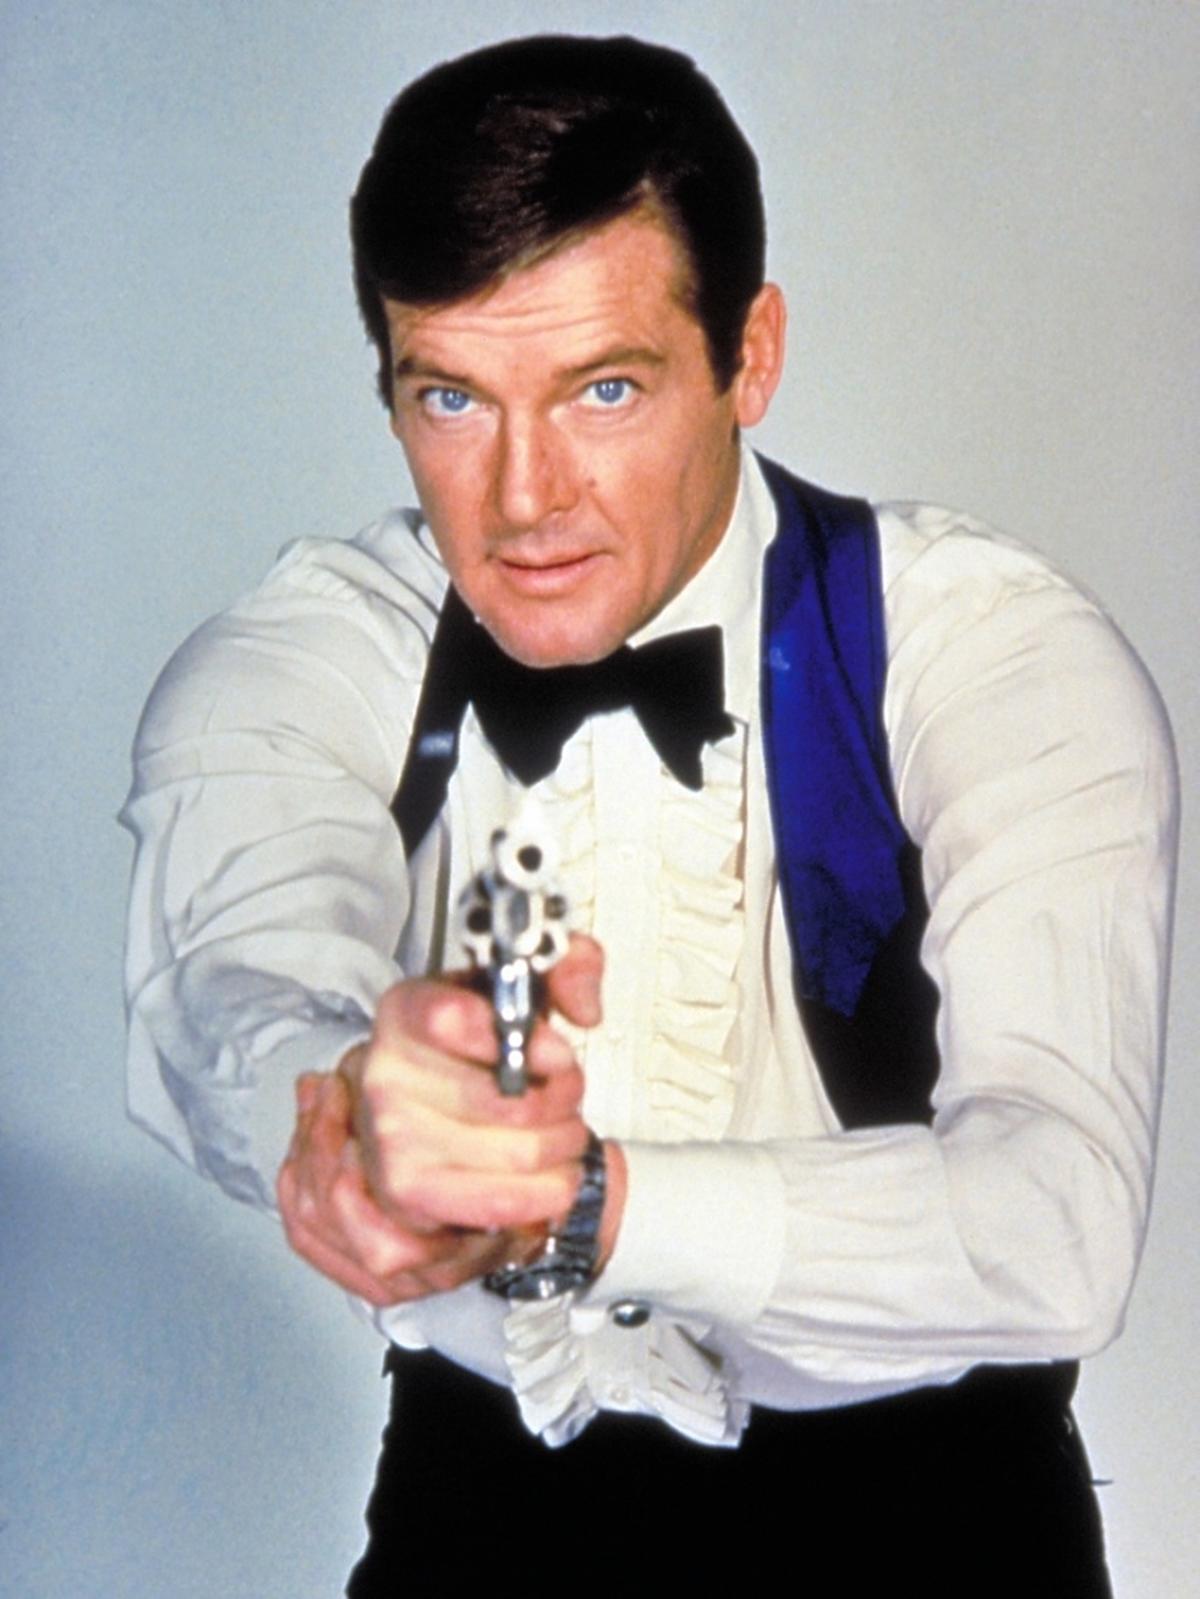  Roger Moore w białej koszuli i czarnej muszce celuje z pistoletu w obiektyw